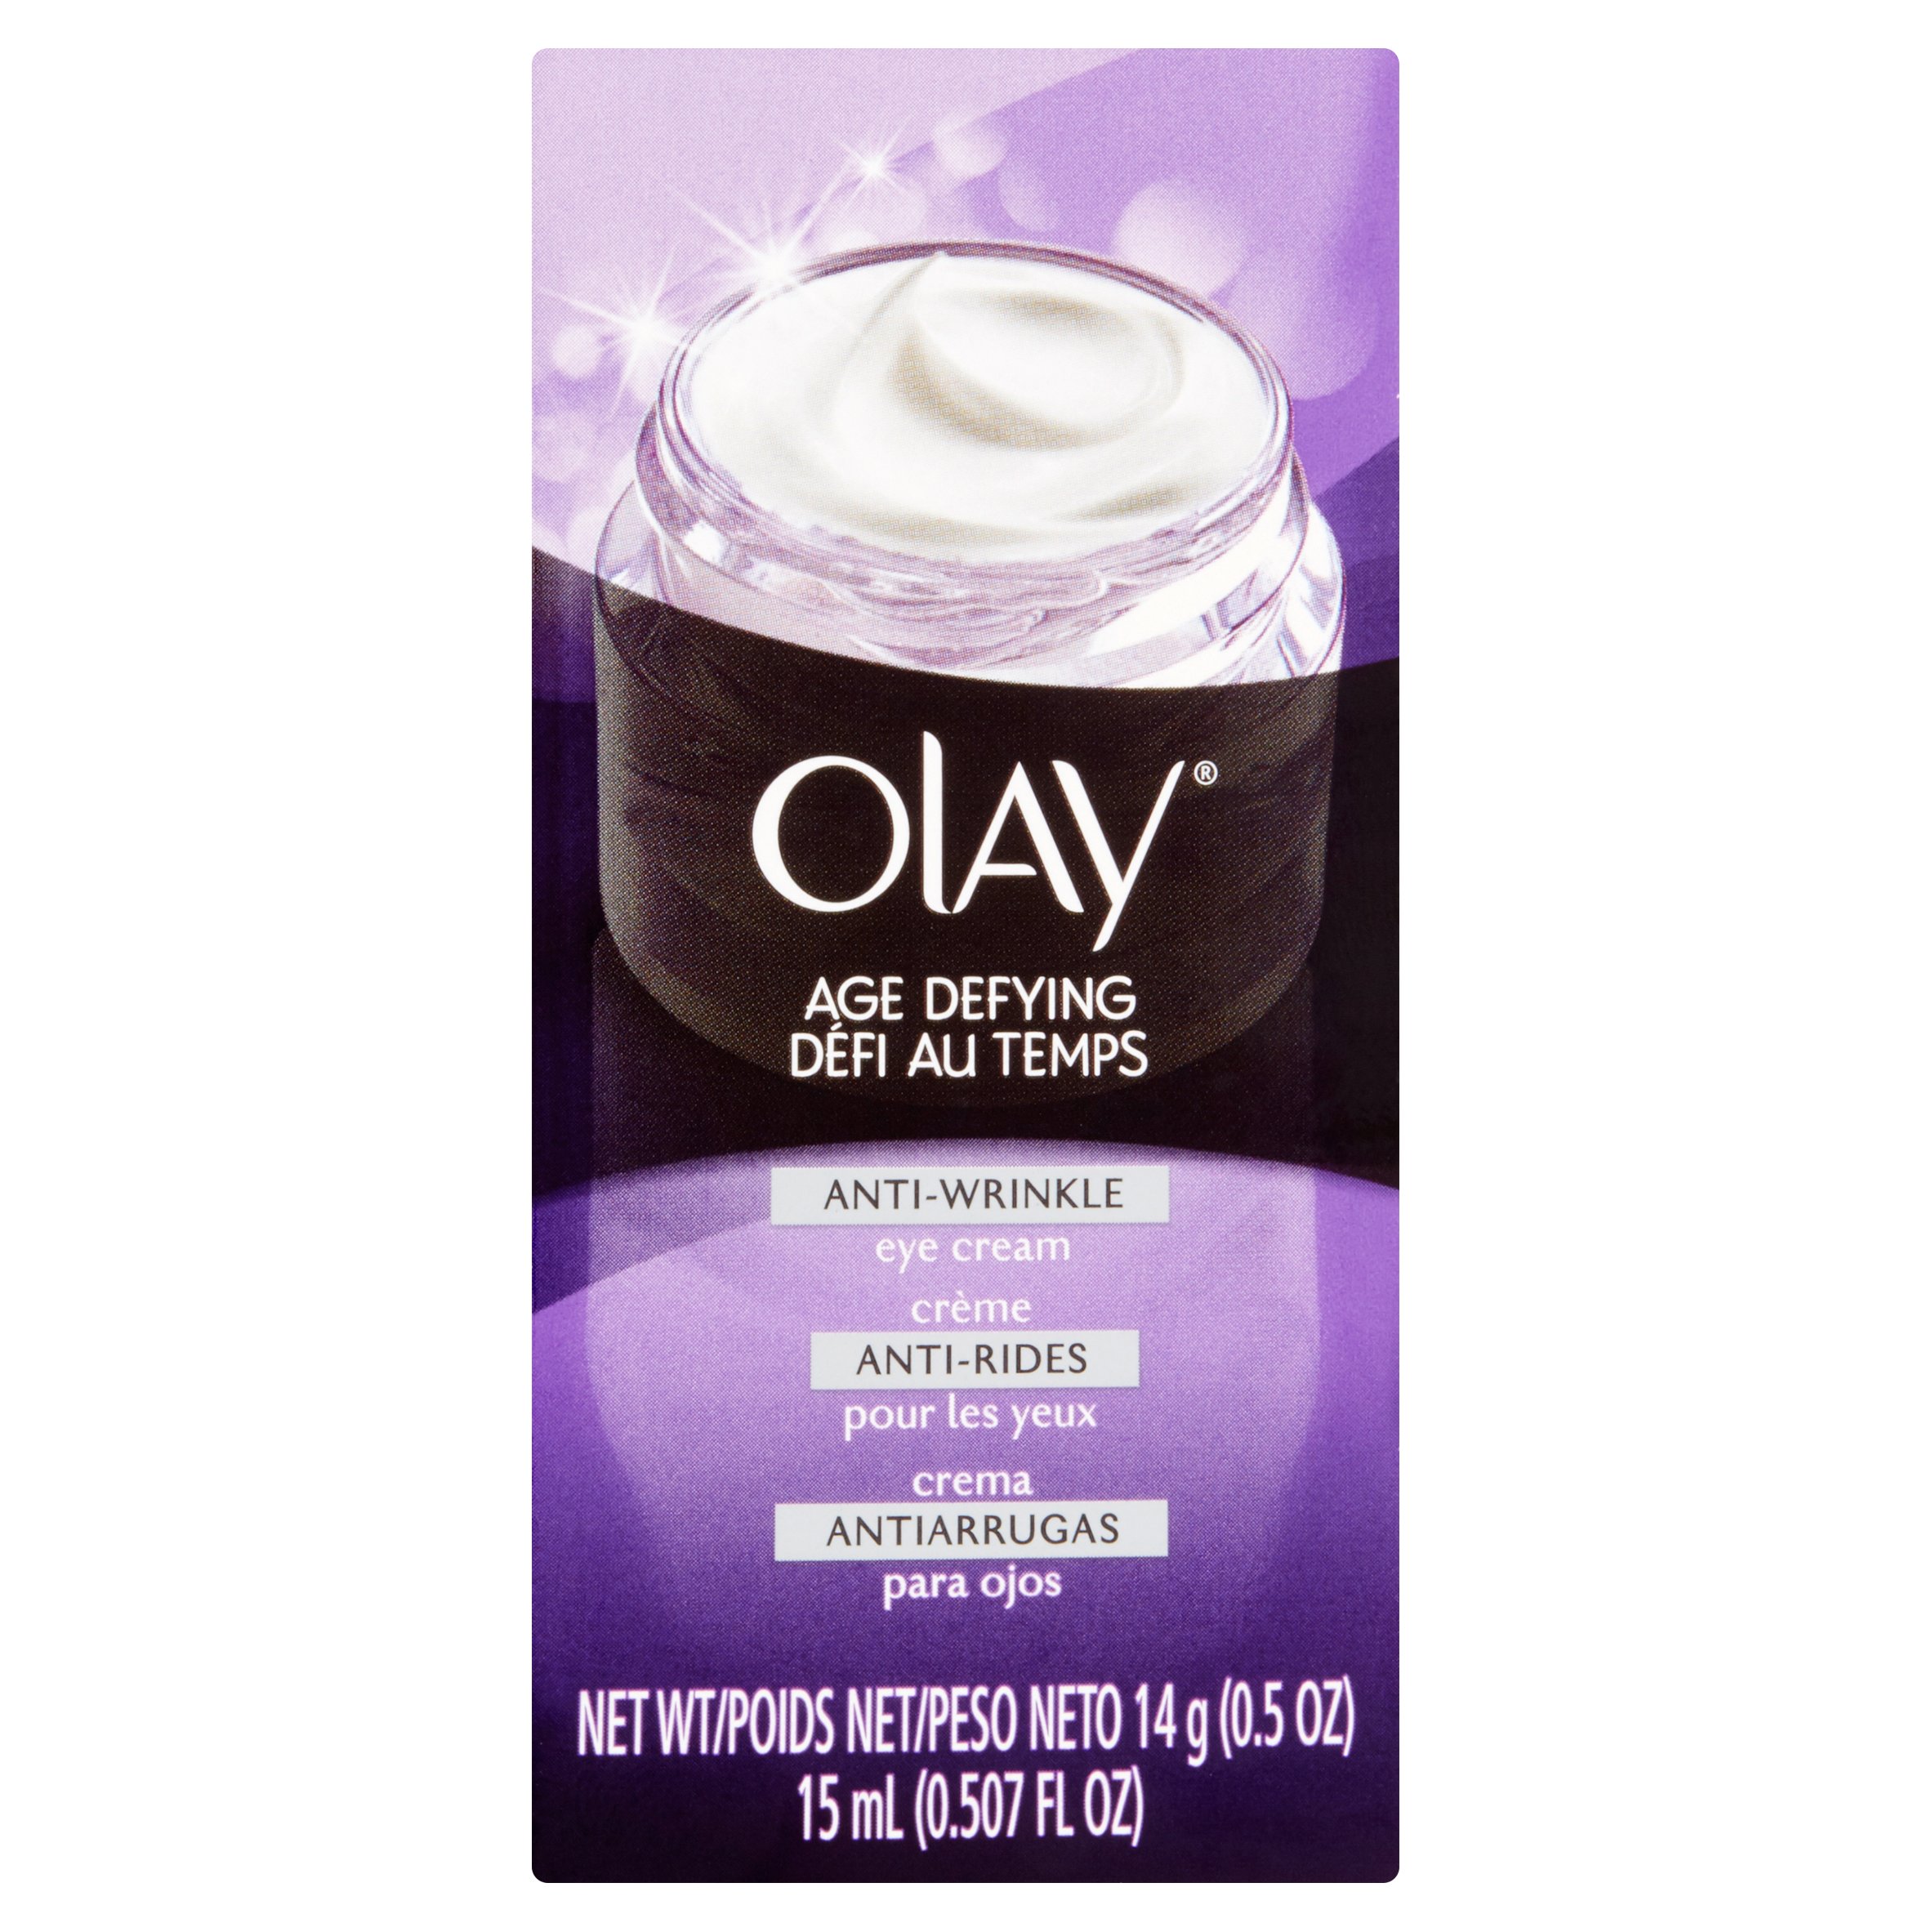 Olay Age Defying Anti-Wrinkle Eye Cream 14g (0.5 OZ) - image 1 of 6